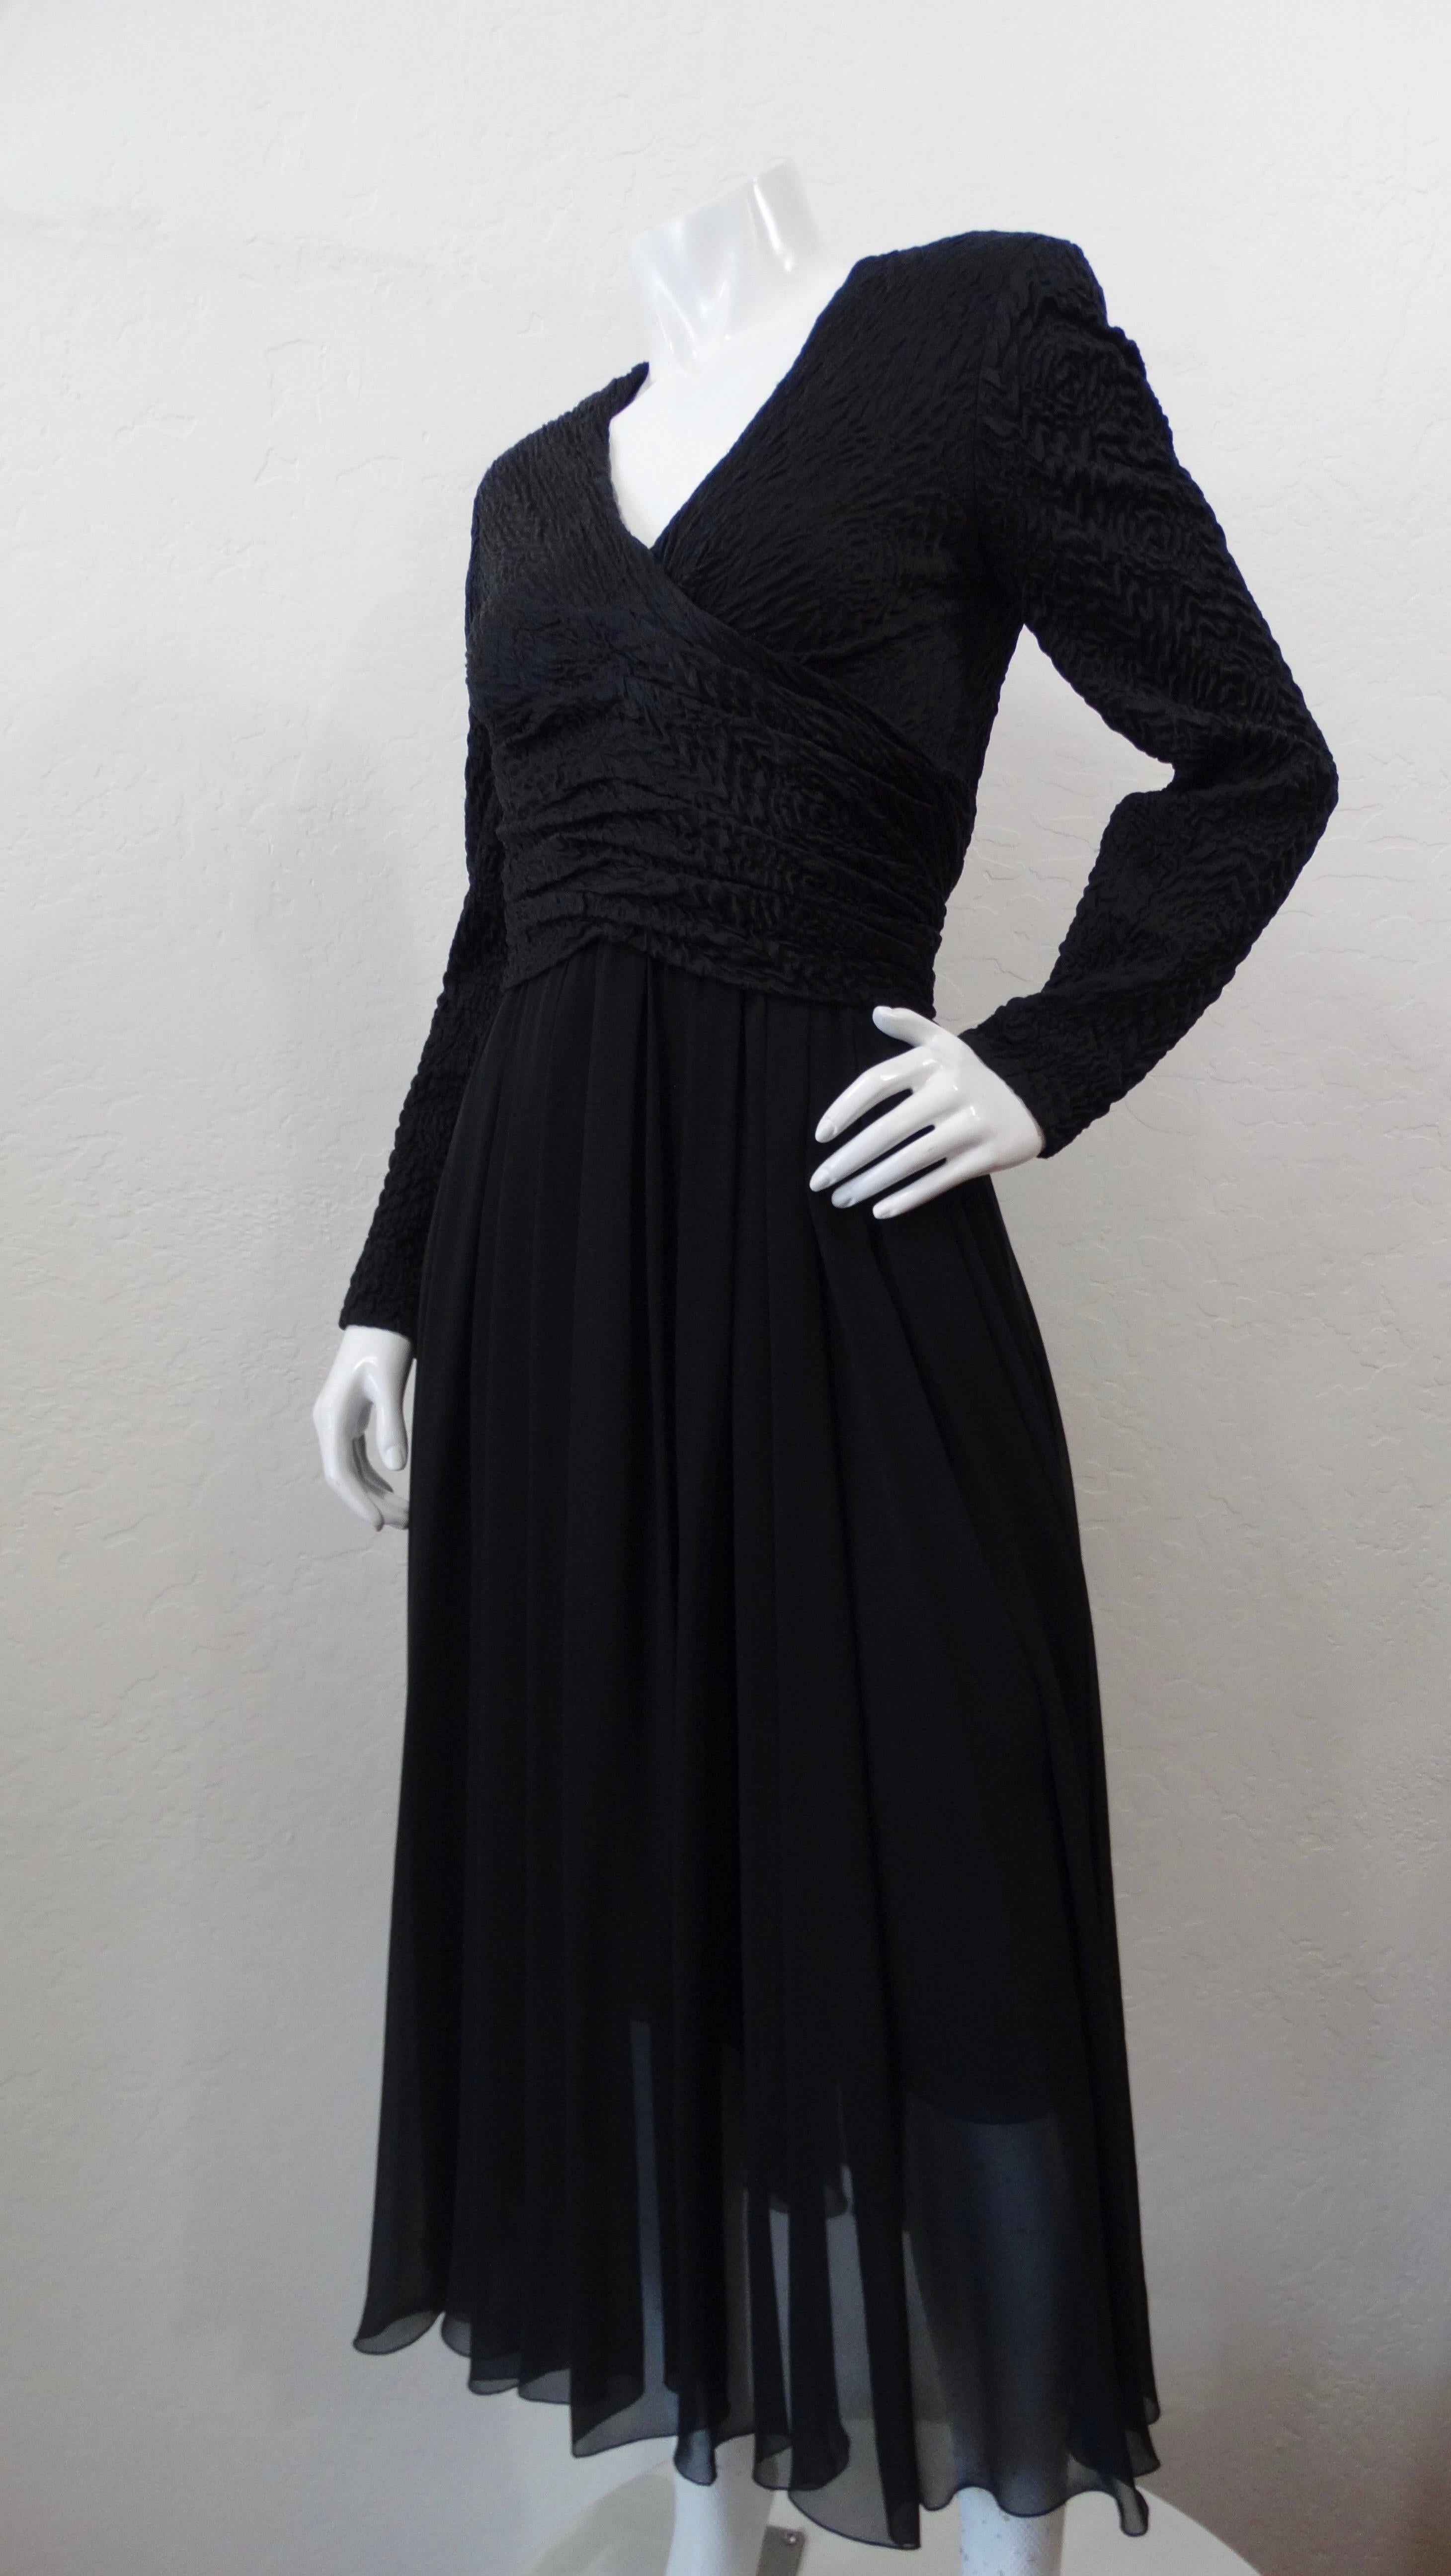 Tout le monde a besoin d'une petite robe de cocktail noire vintage, surtout quand c'est du Chanel ! Datant des années 1980, cette magnifique robe de soirée noire présente une encolure en V flatteuse, des manches longues, des épaules fortes et une